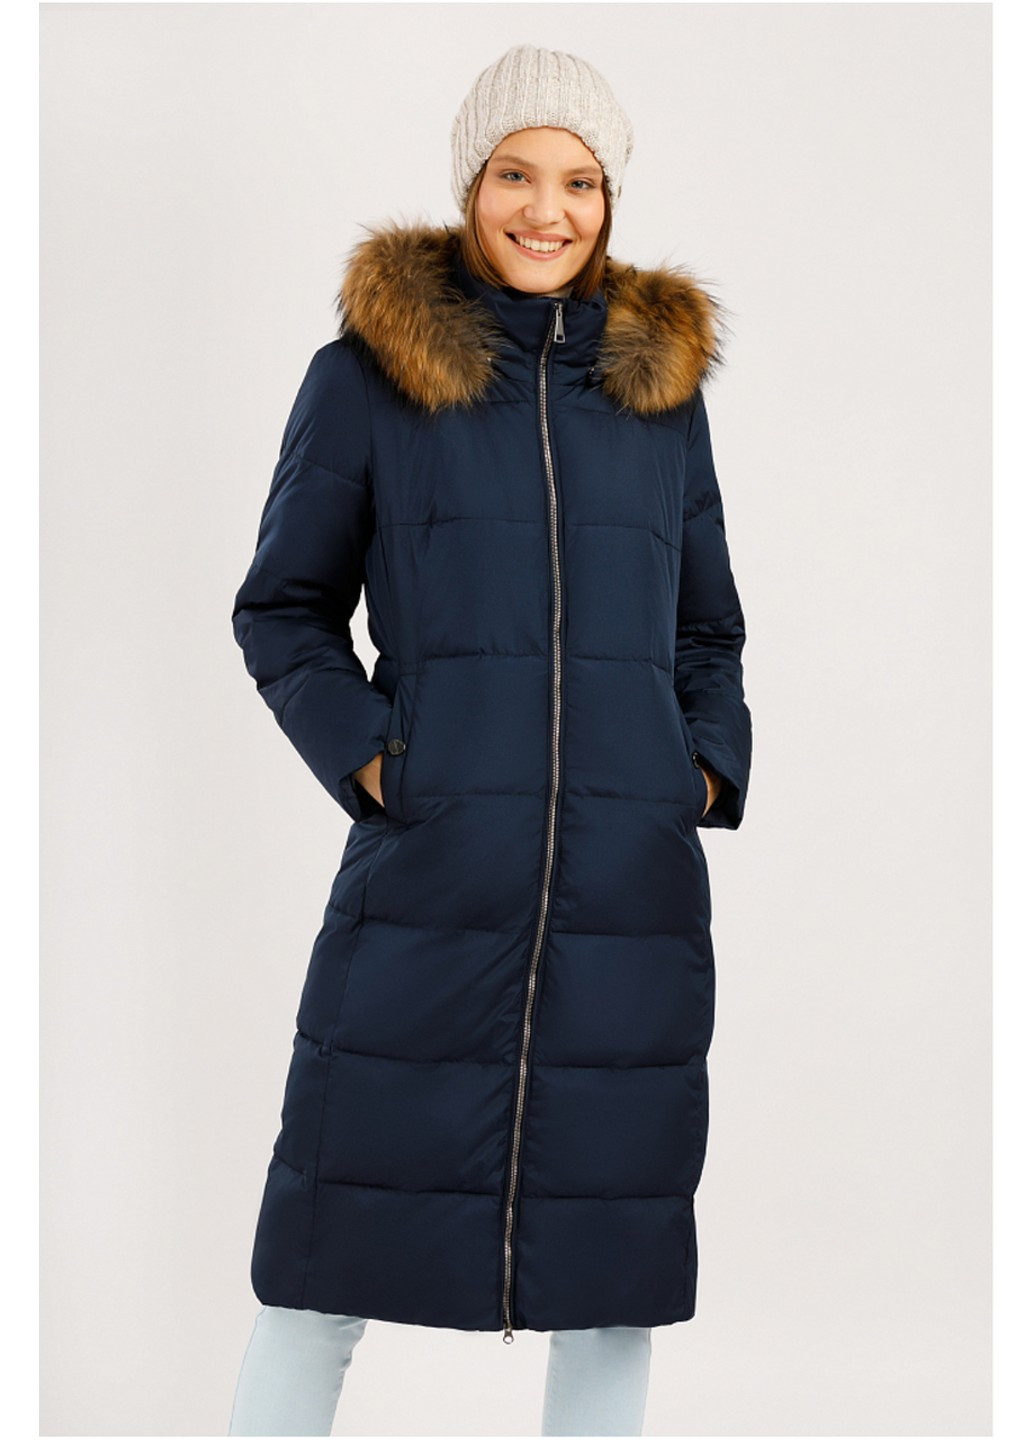 Темно-синяя зимняя зимняя куртка с мехом w19-11007-101 Finn Flare